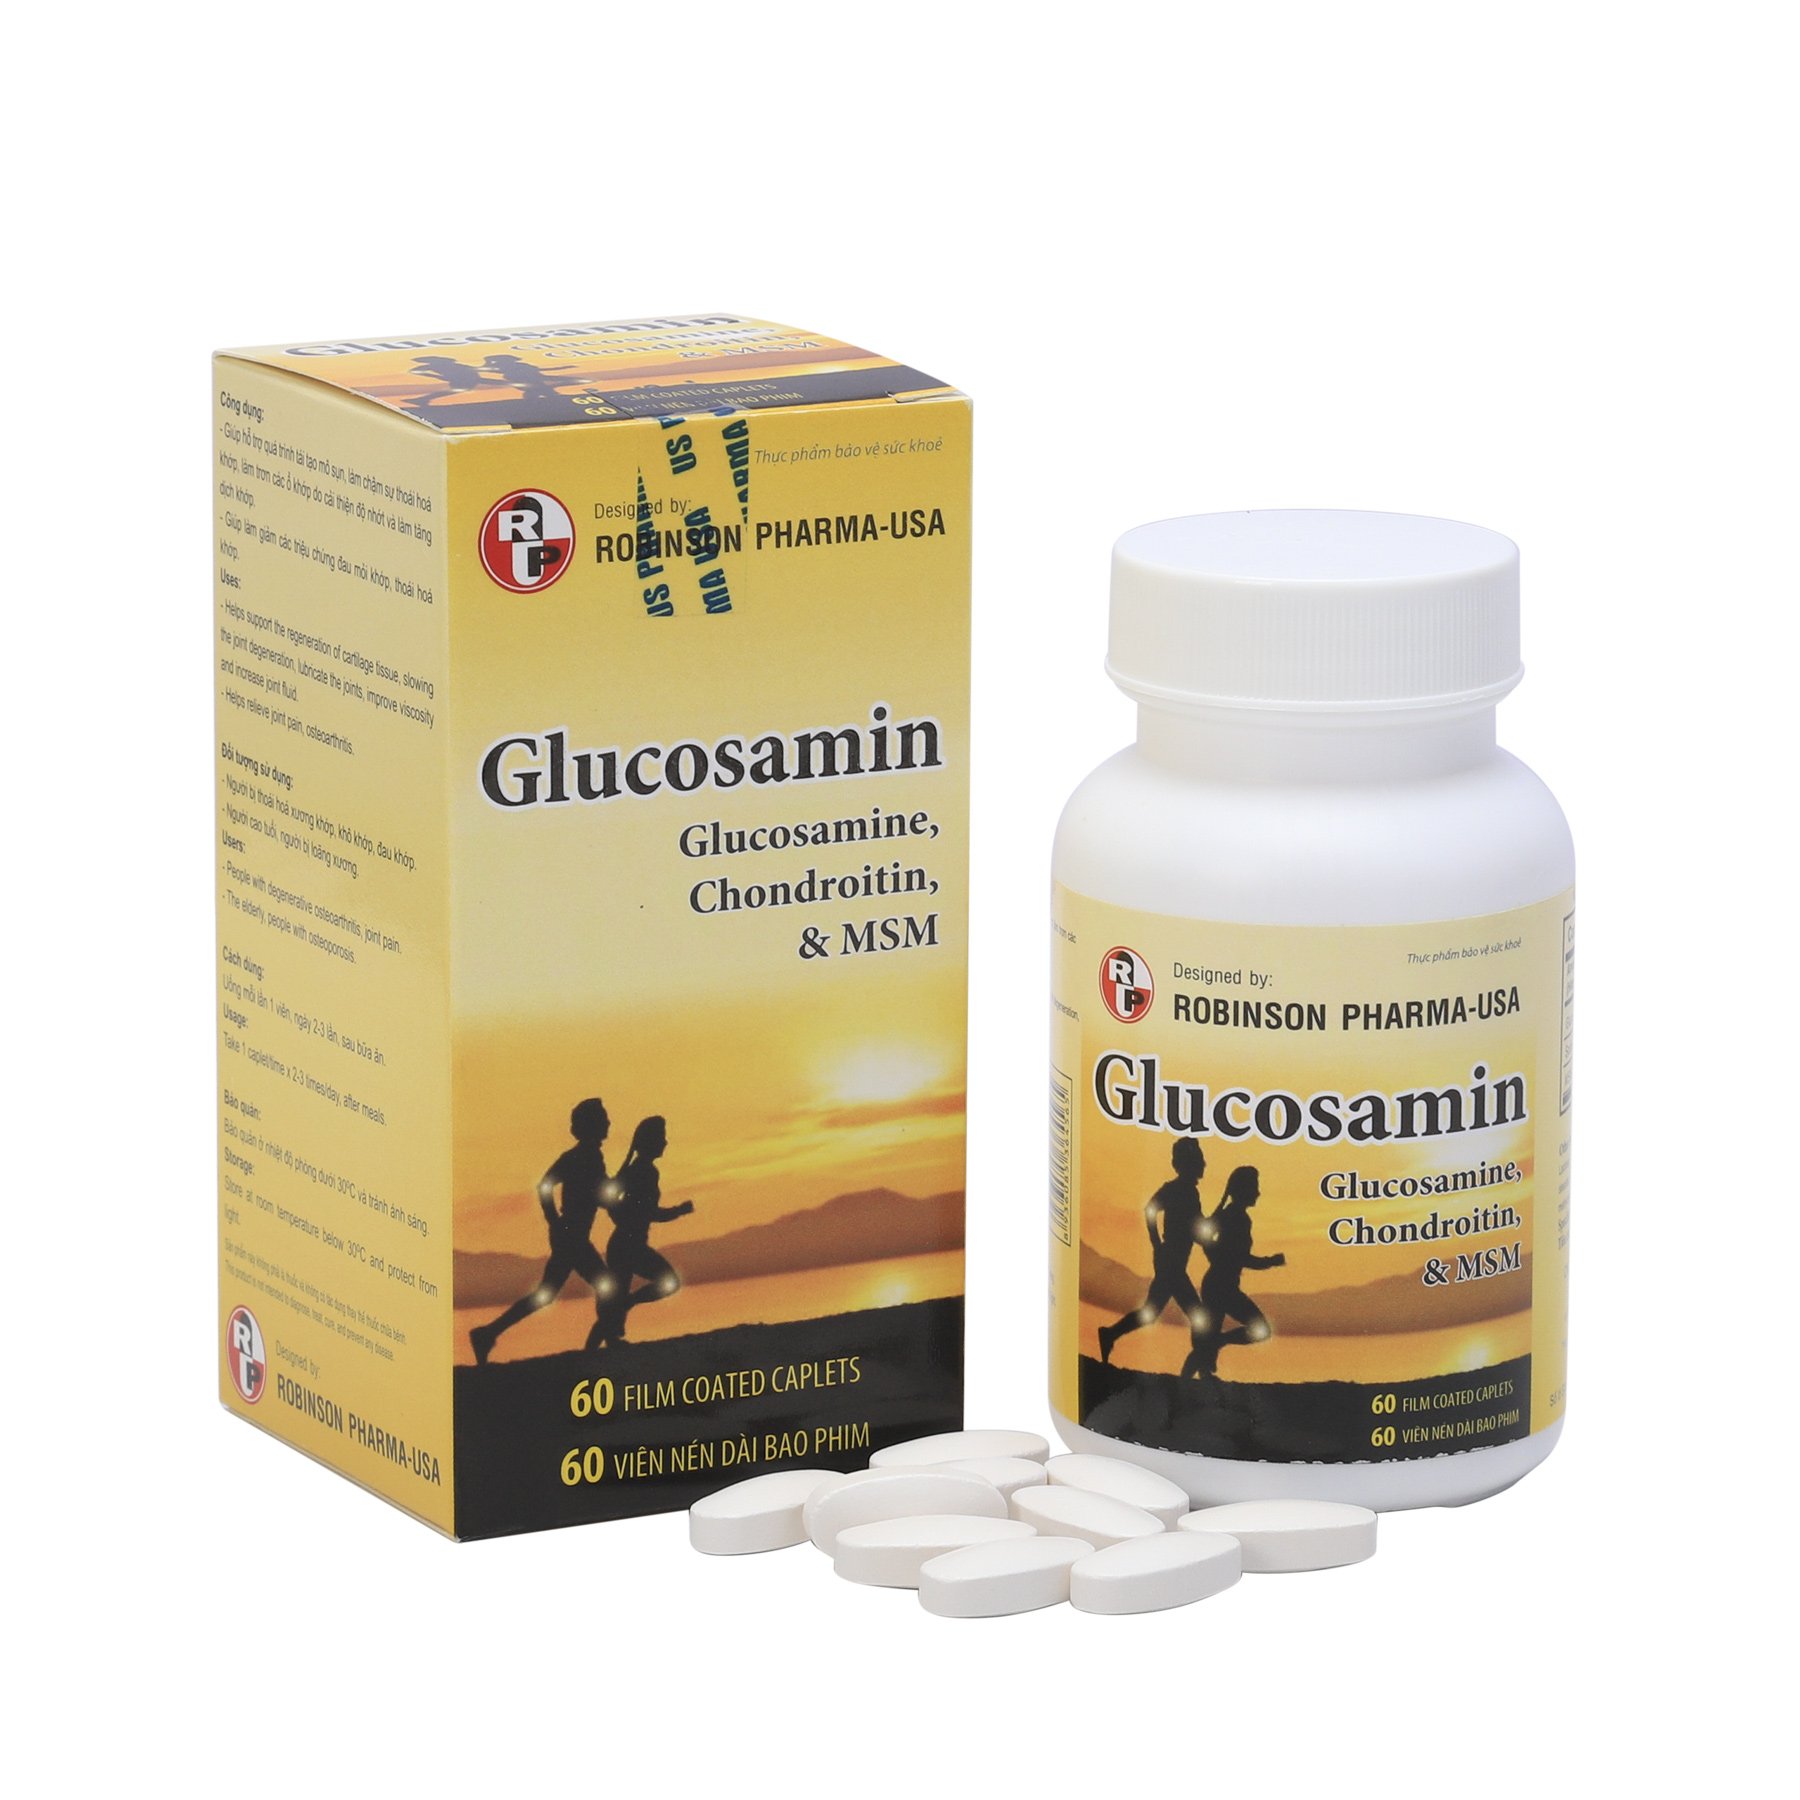 Viên uống TPCN GLUCOSAMIN giúp ngăn ngừa và hạn chế viêm khớp,bôi trơn các khớp xương,hỗ trợ làm giảm triệu chứng khô khớp,thoái hóa khớp-chai 60 viên